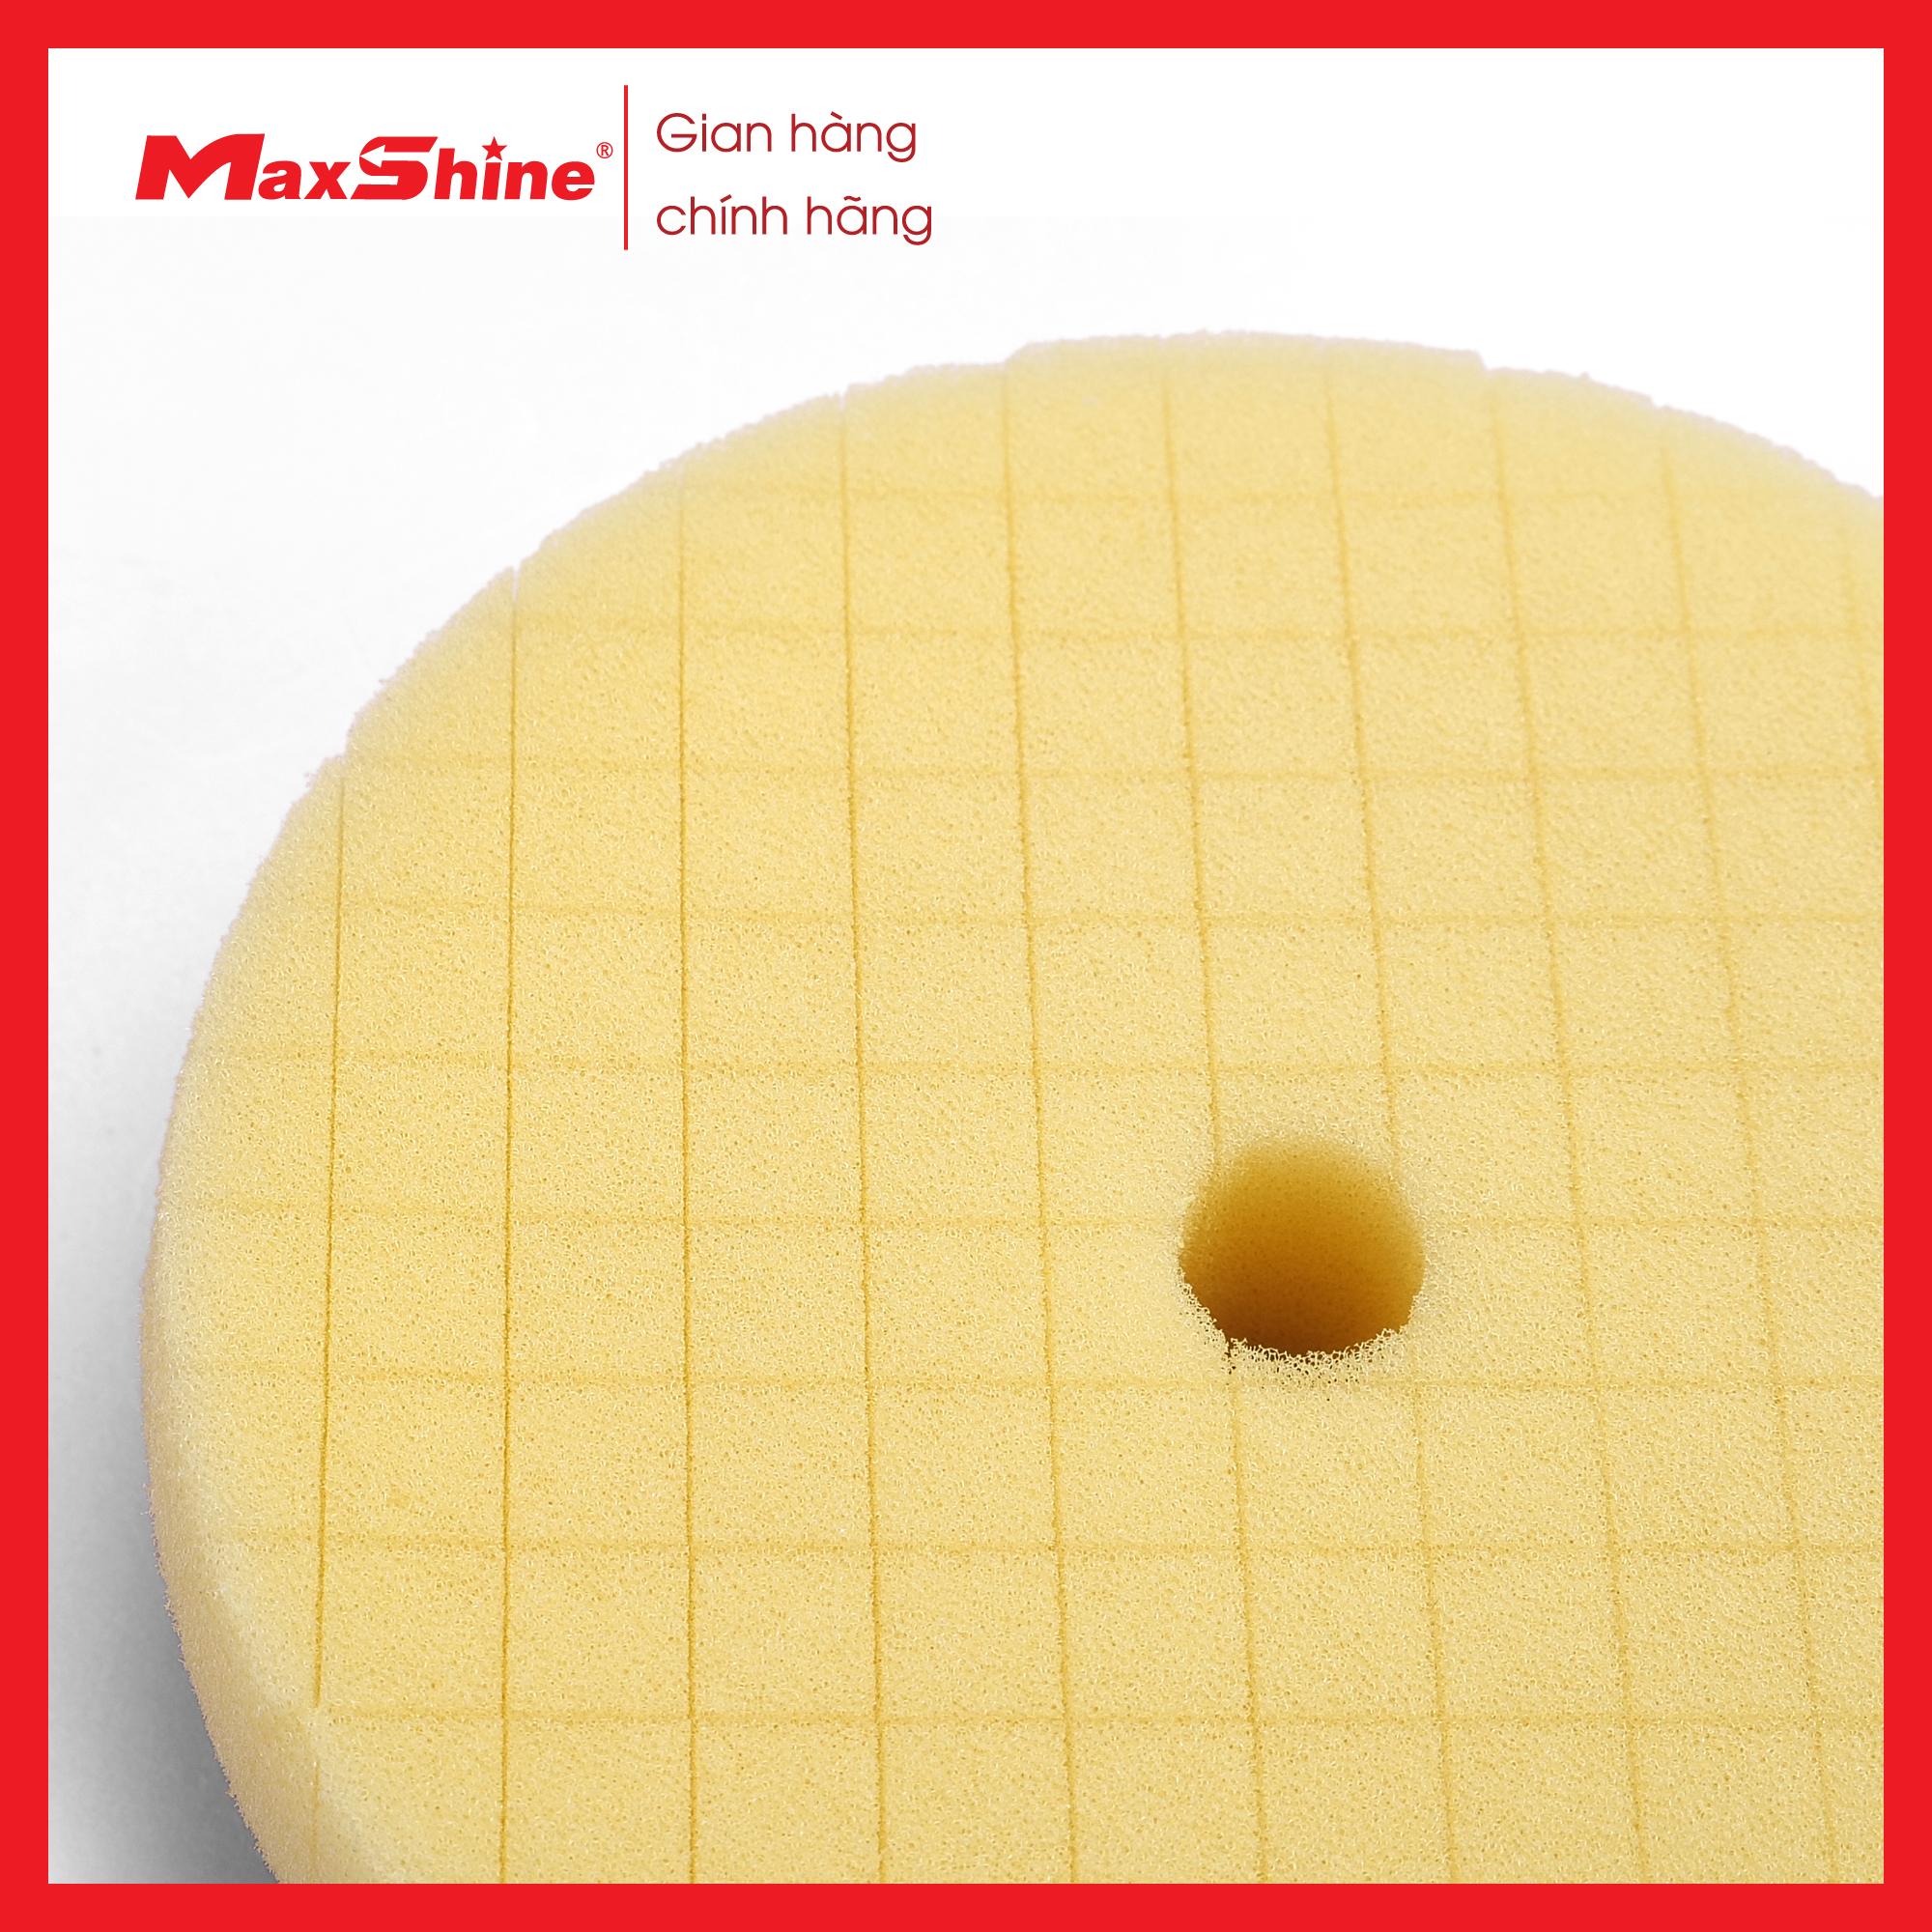 Phớt xốp/mút đánh bóng caro bước 2 kích thước 3 inch Maxshine 2002090Y màu vàng, được làm từ xốp mềm, có tính đàn hồi, được cắt chéo bề măt giúp thoát nhiệt nhanh